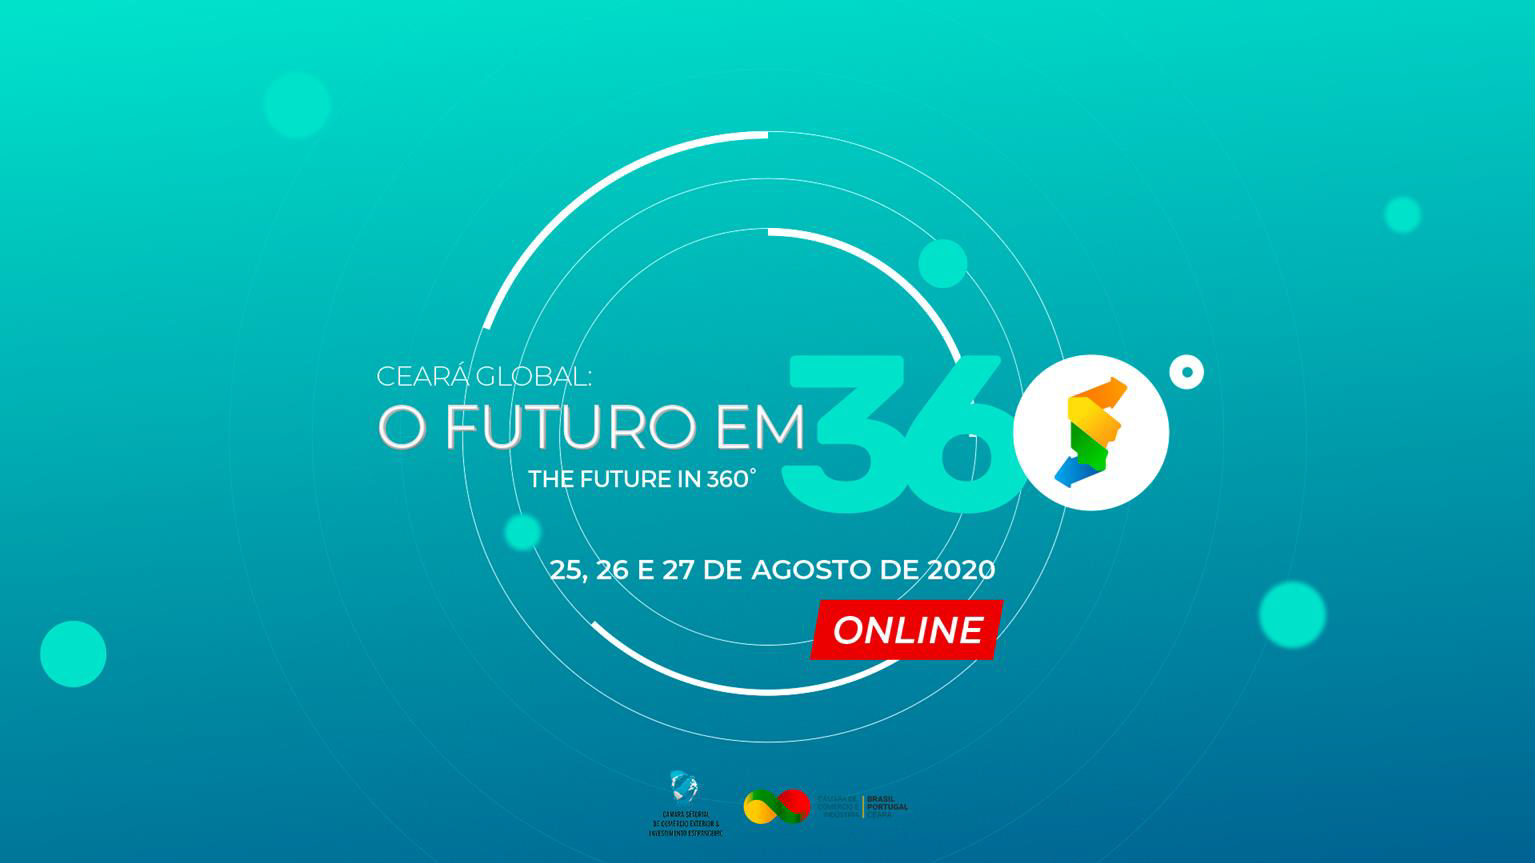 Apex-Brasil lança, em parceria com o Centro Internacional de Negócios da  FIEC, Núcleo do PEIEX em Fortaleza - Sistema FIEC - Federação das  Indústrias do Estado do Ceará